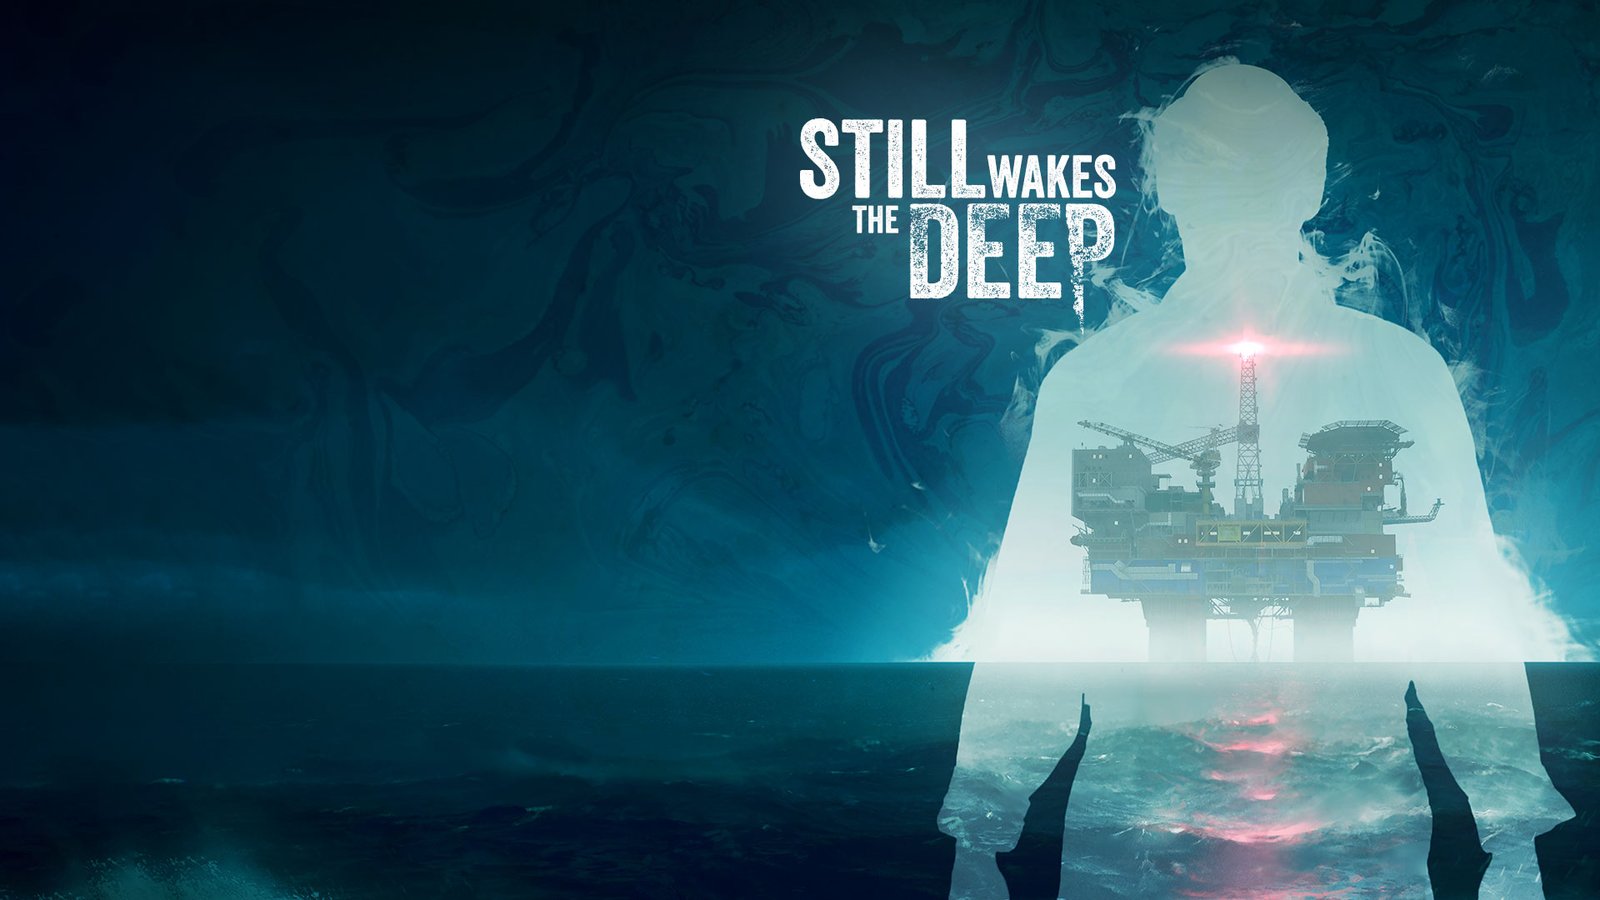 لعبة Still Wakes the Deep قادمة رسميًا في 18 يونيو القادم